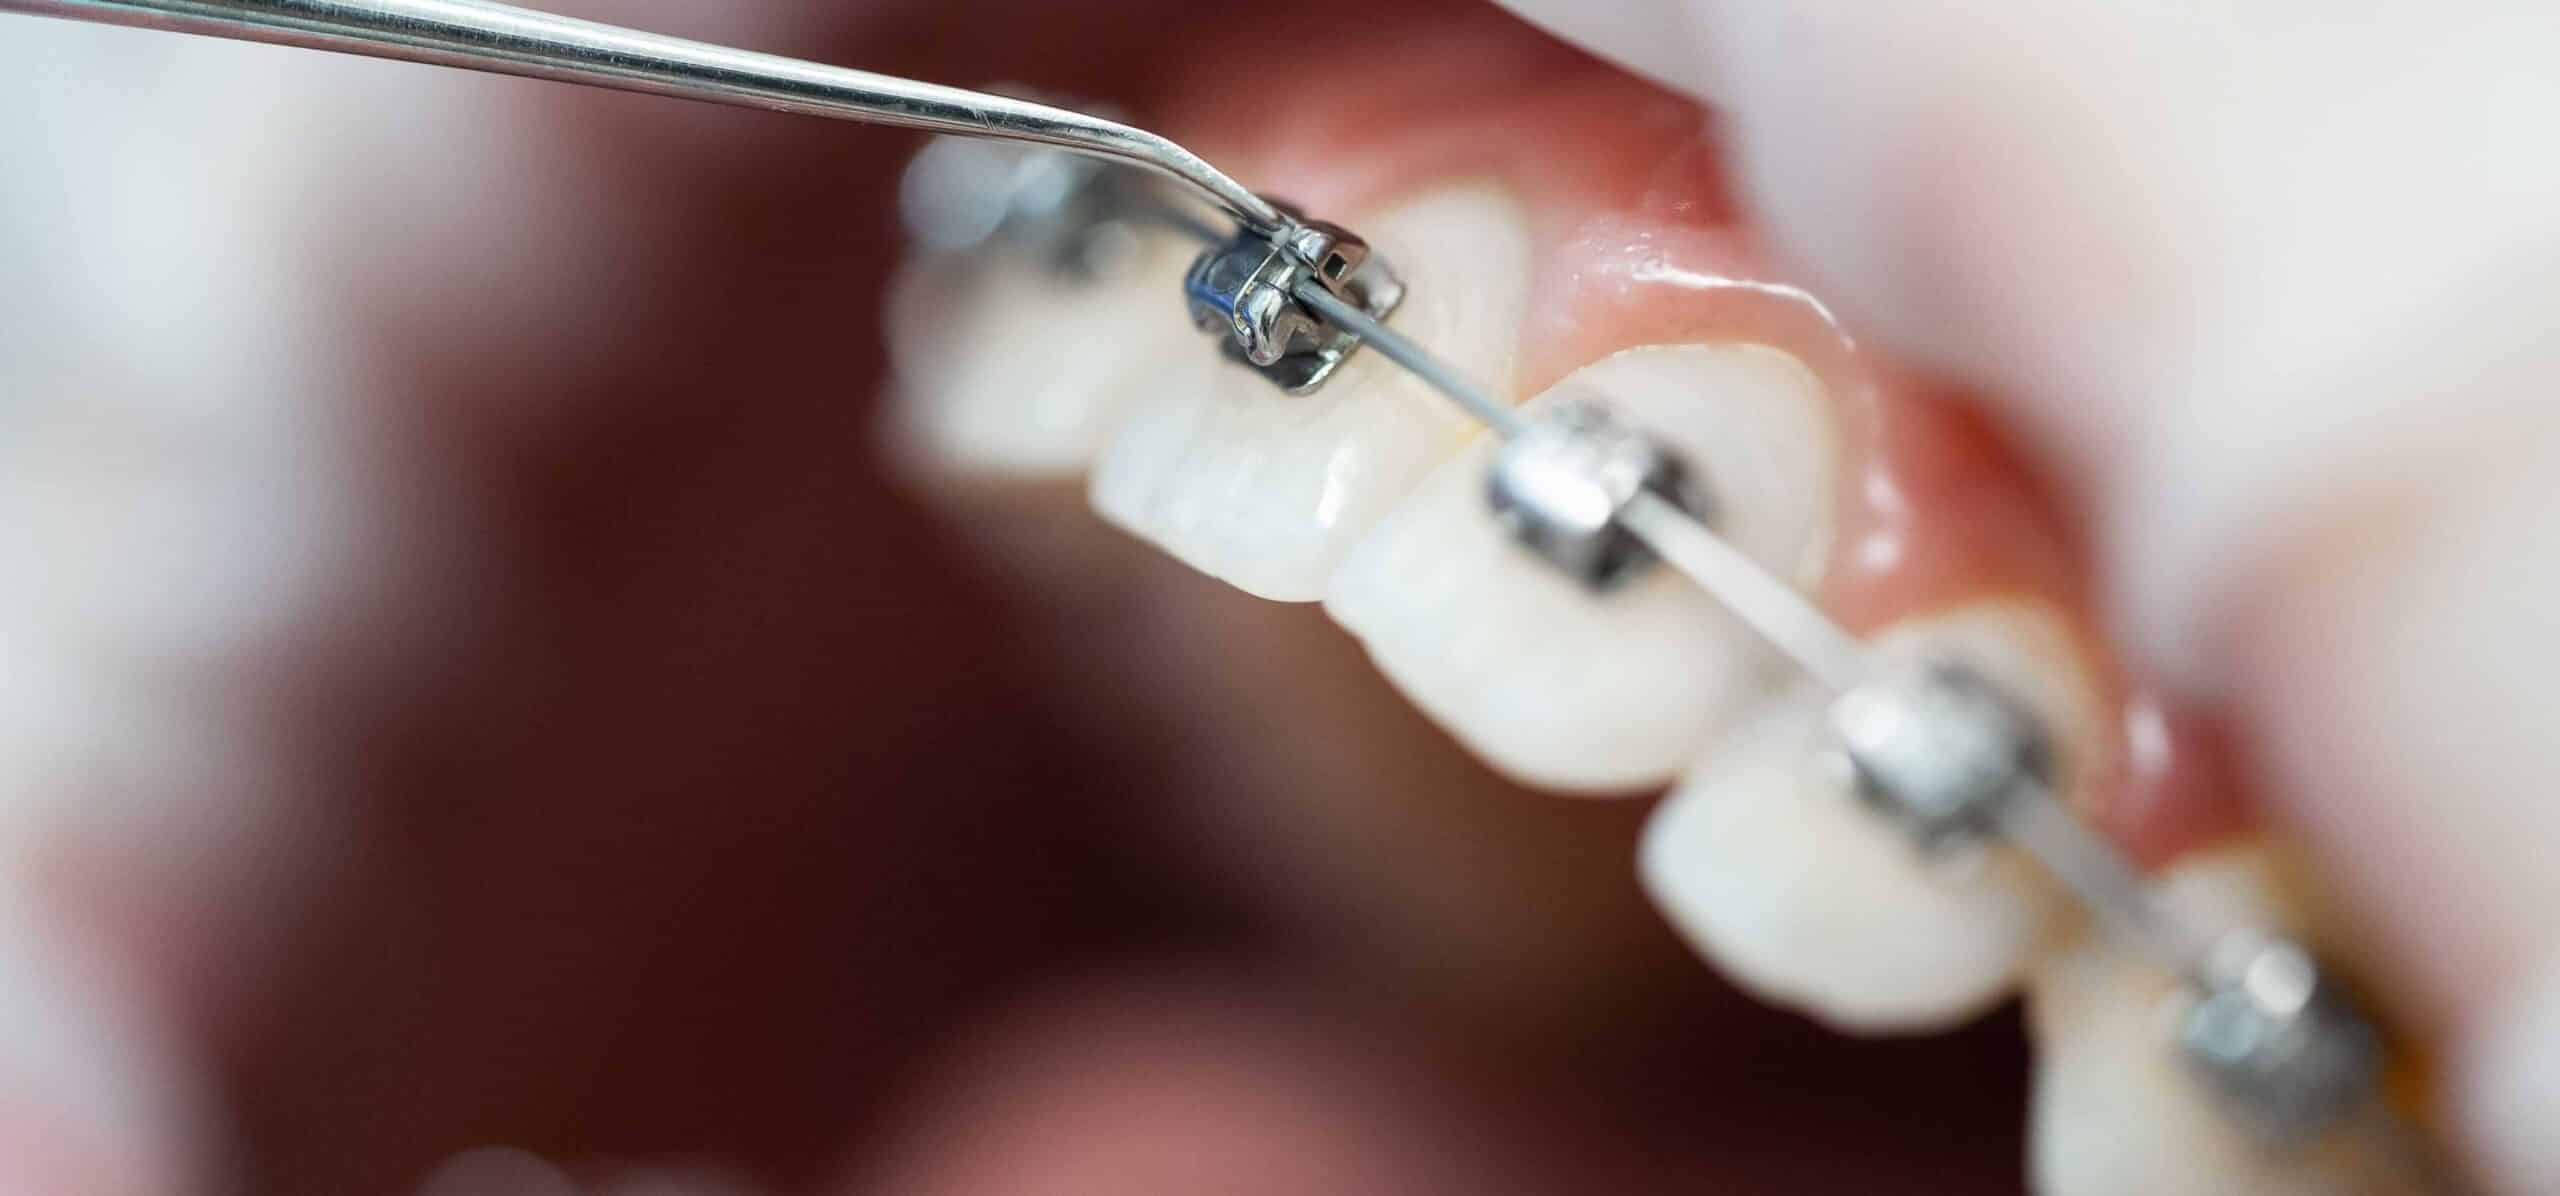 Les bénéfices d’un traitement orthodontique sur la santé bucco-dentaire | Dr Temstet | Paris